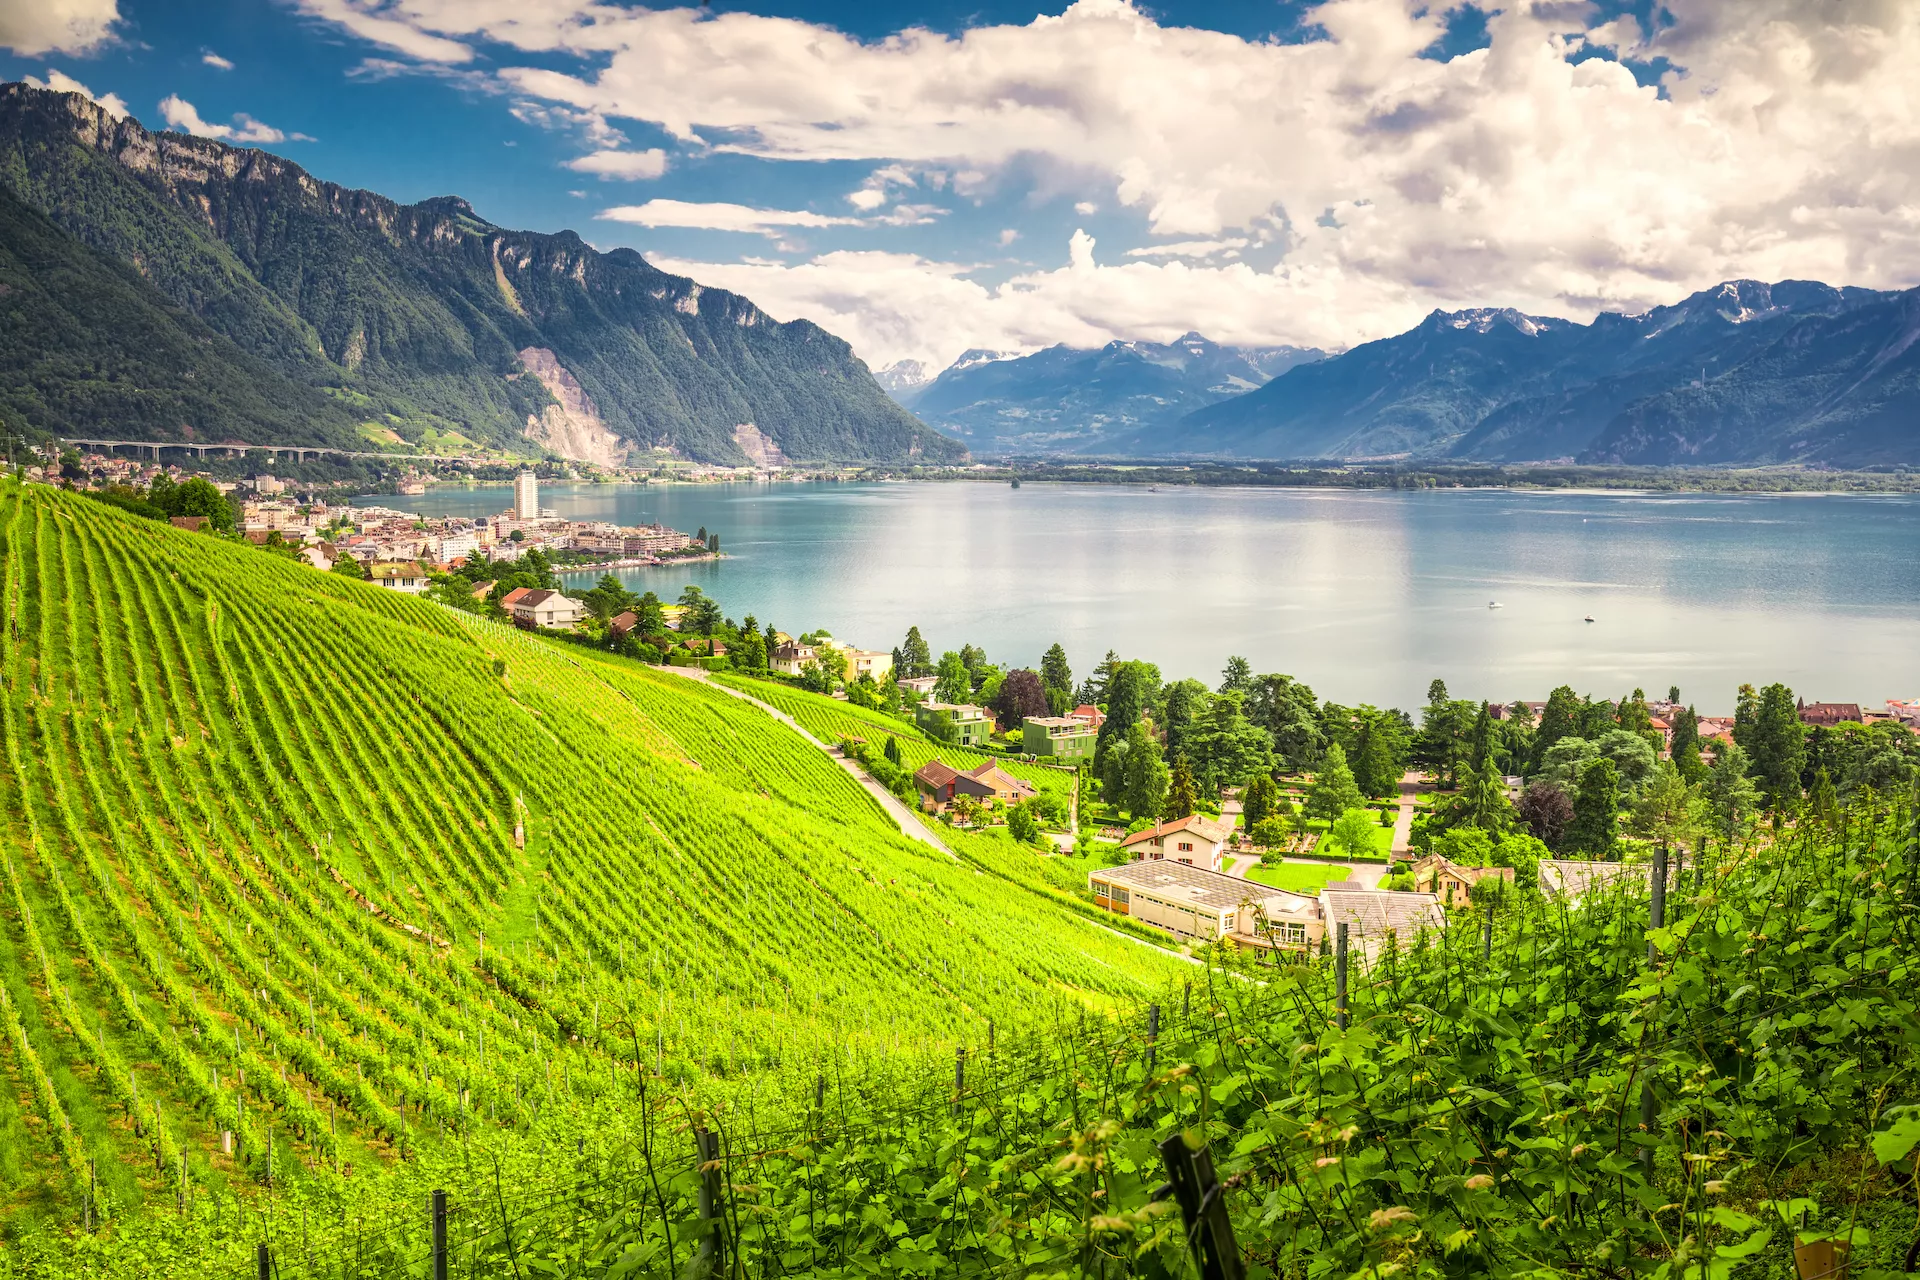 Montreux stad med schweiziska alperna, Genèvesjön och vingården i Lavaux-regionen